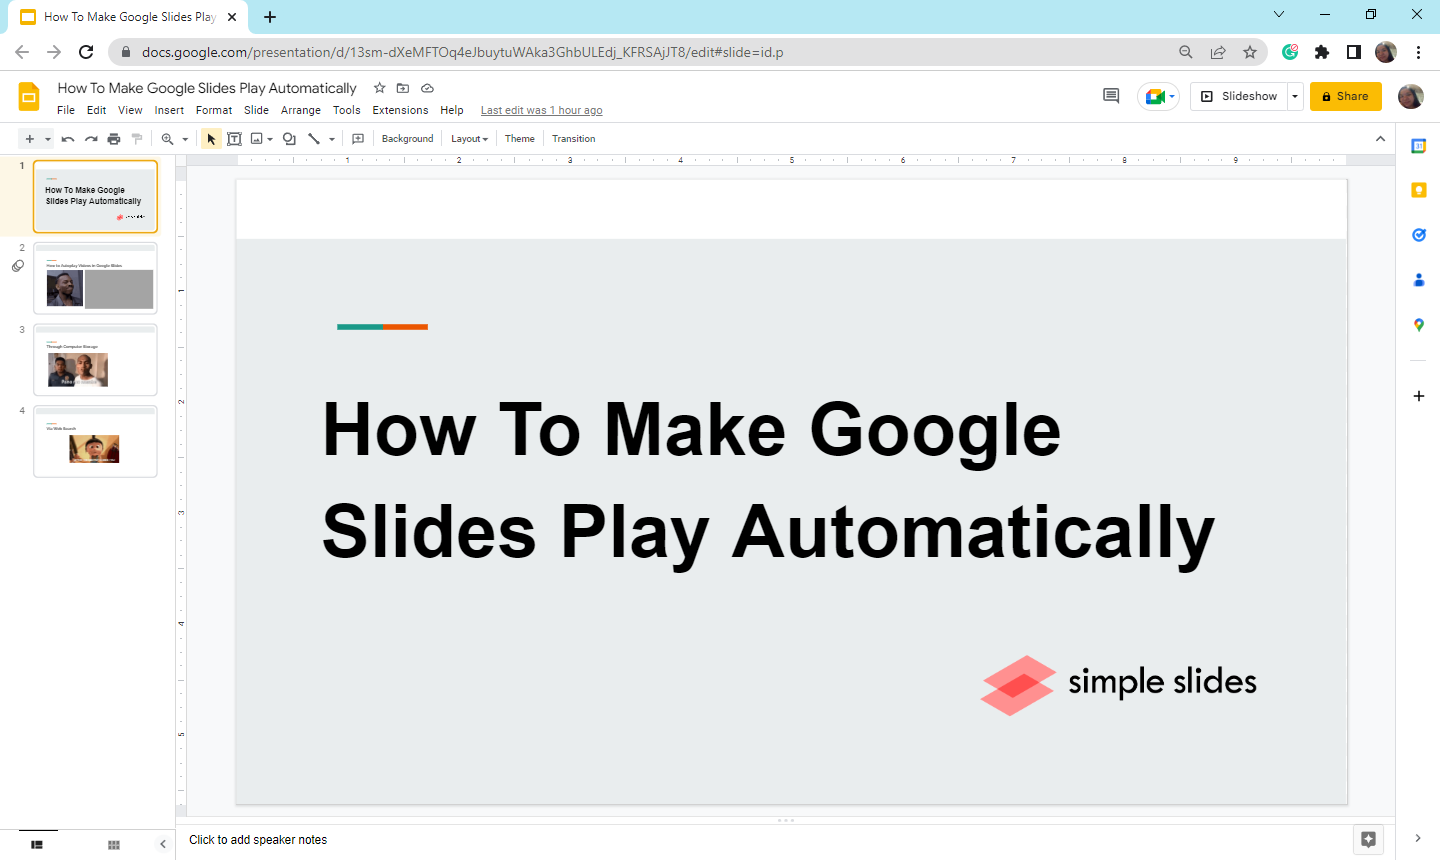 Open your Google Slides presentation